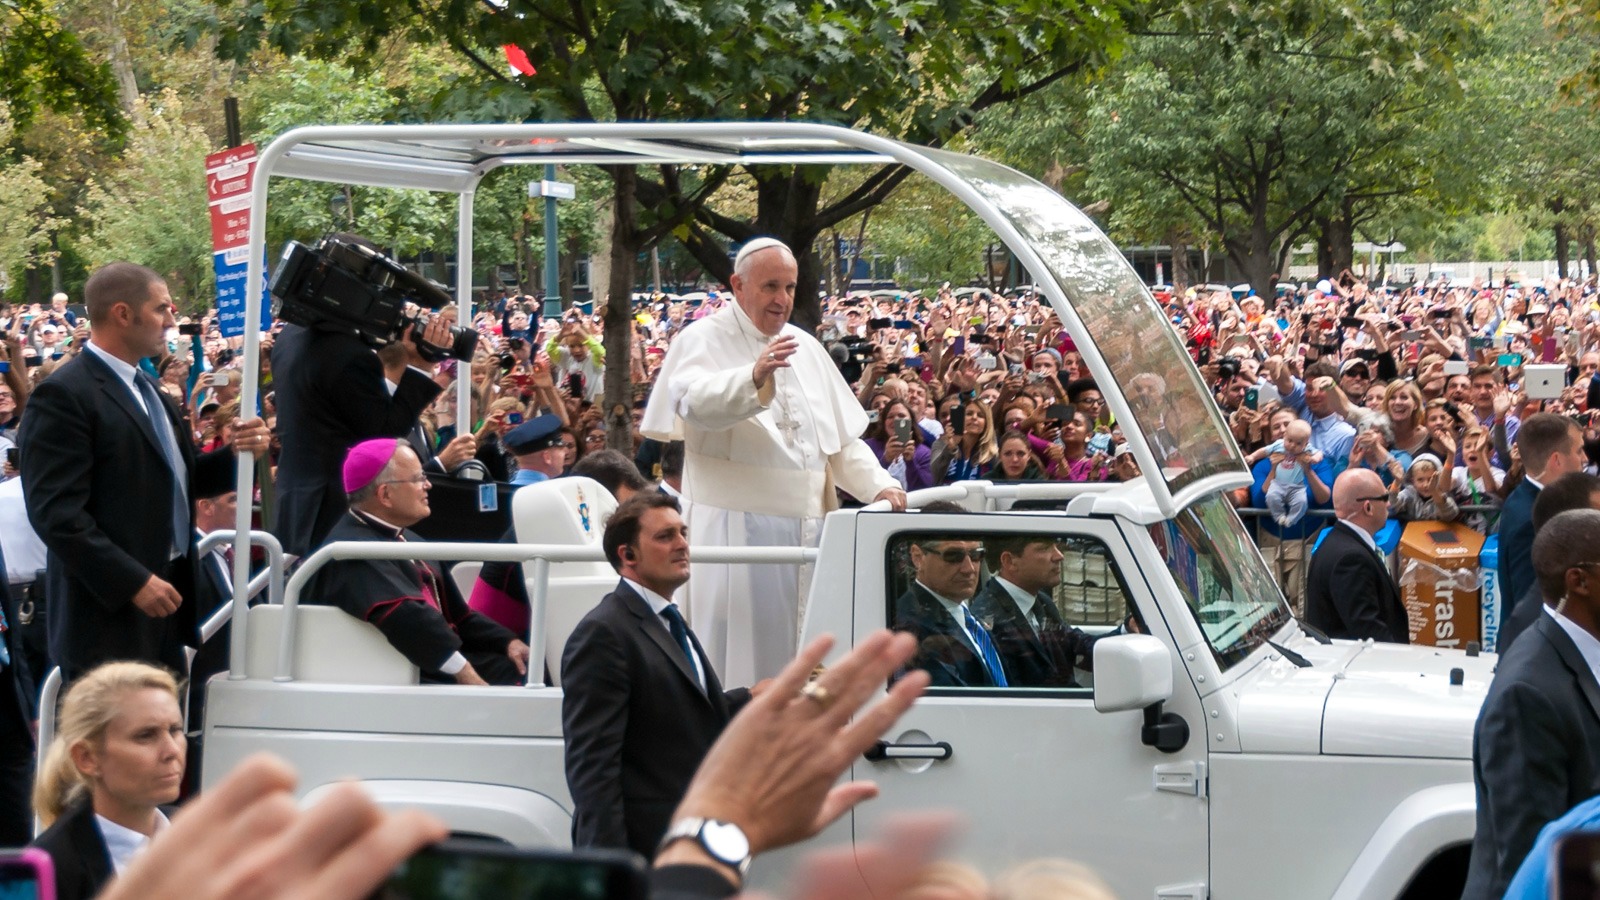 Le pape François a fait un arrêt imprévu pour bénir un enfant handicapé (Photo: pml2008/Flickr/CC BY-SA 2.0)